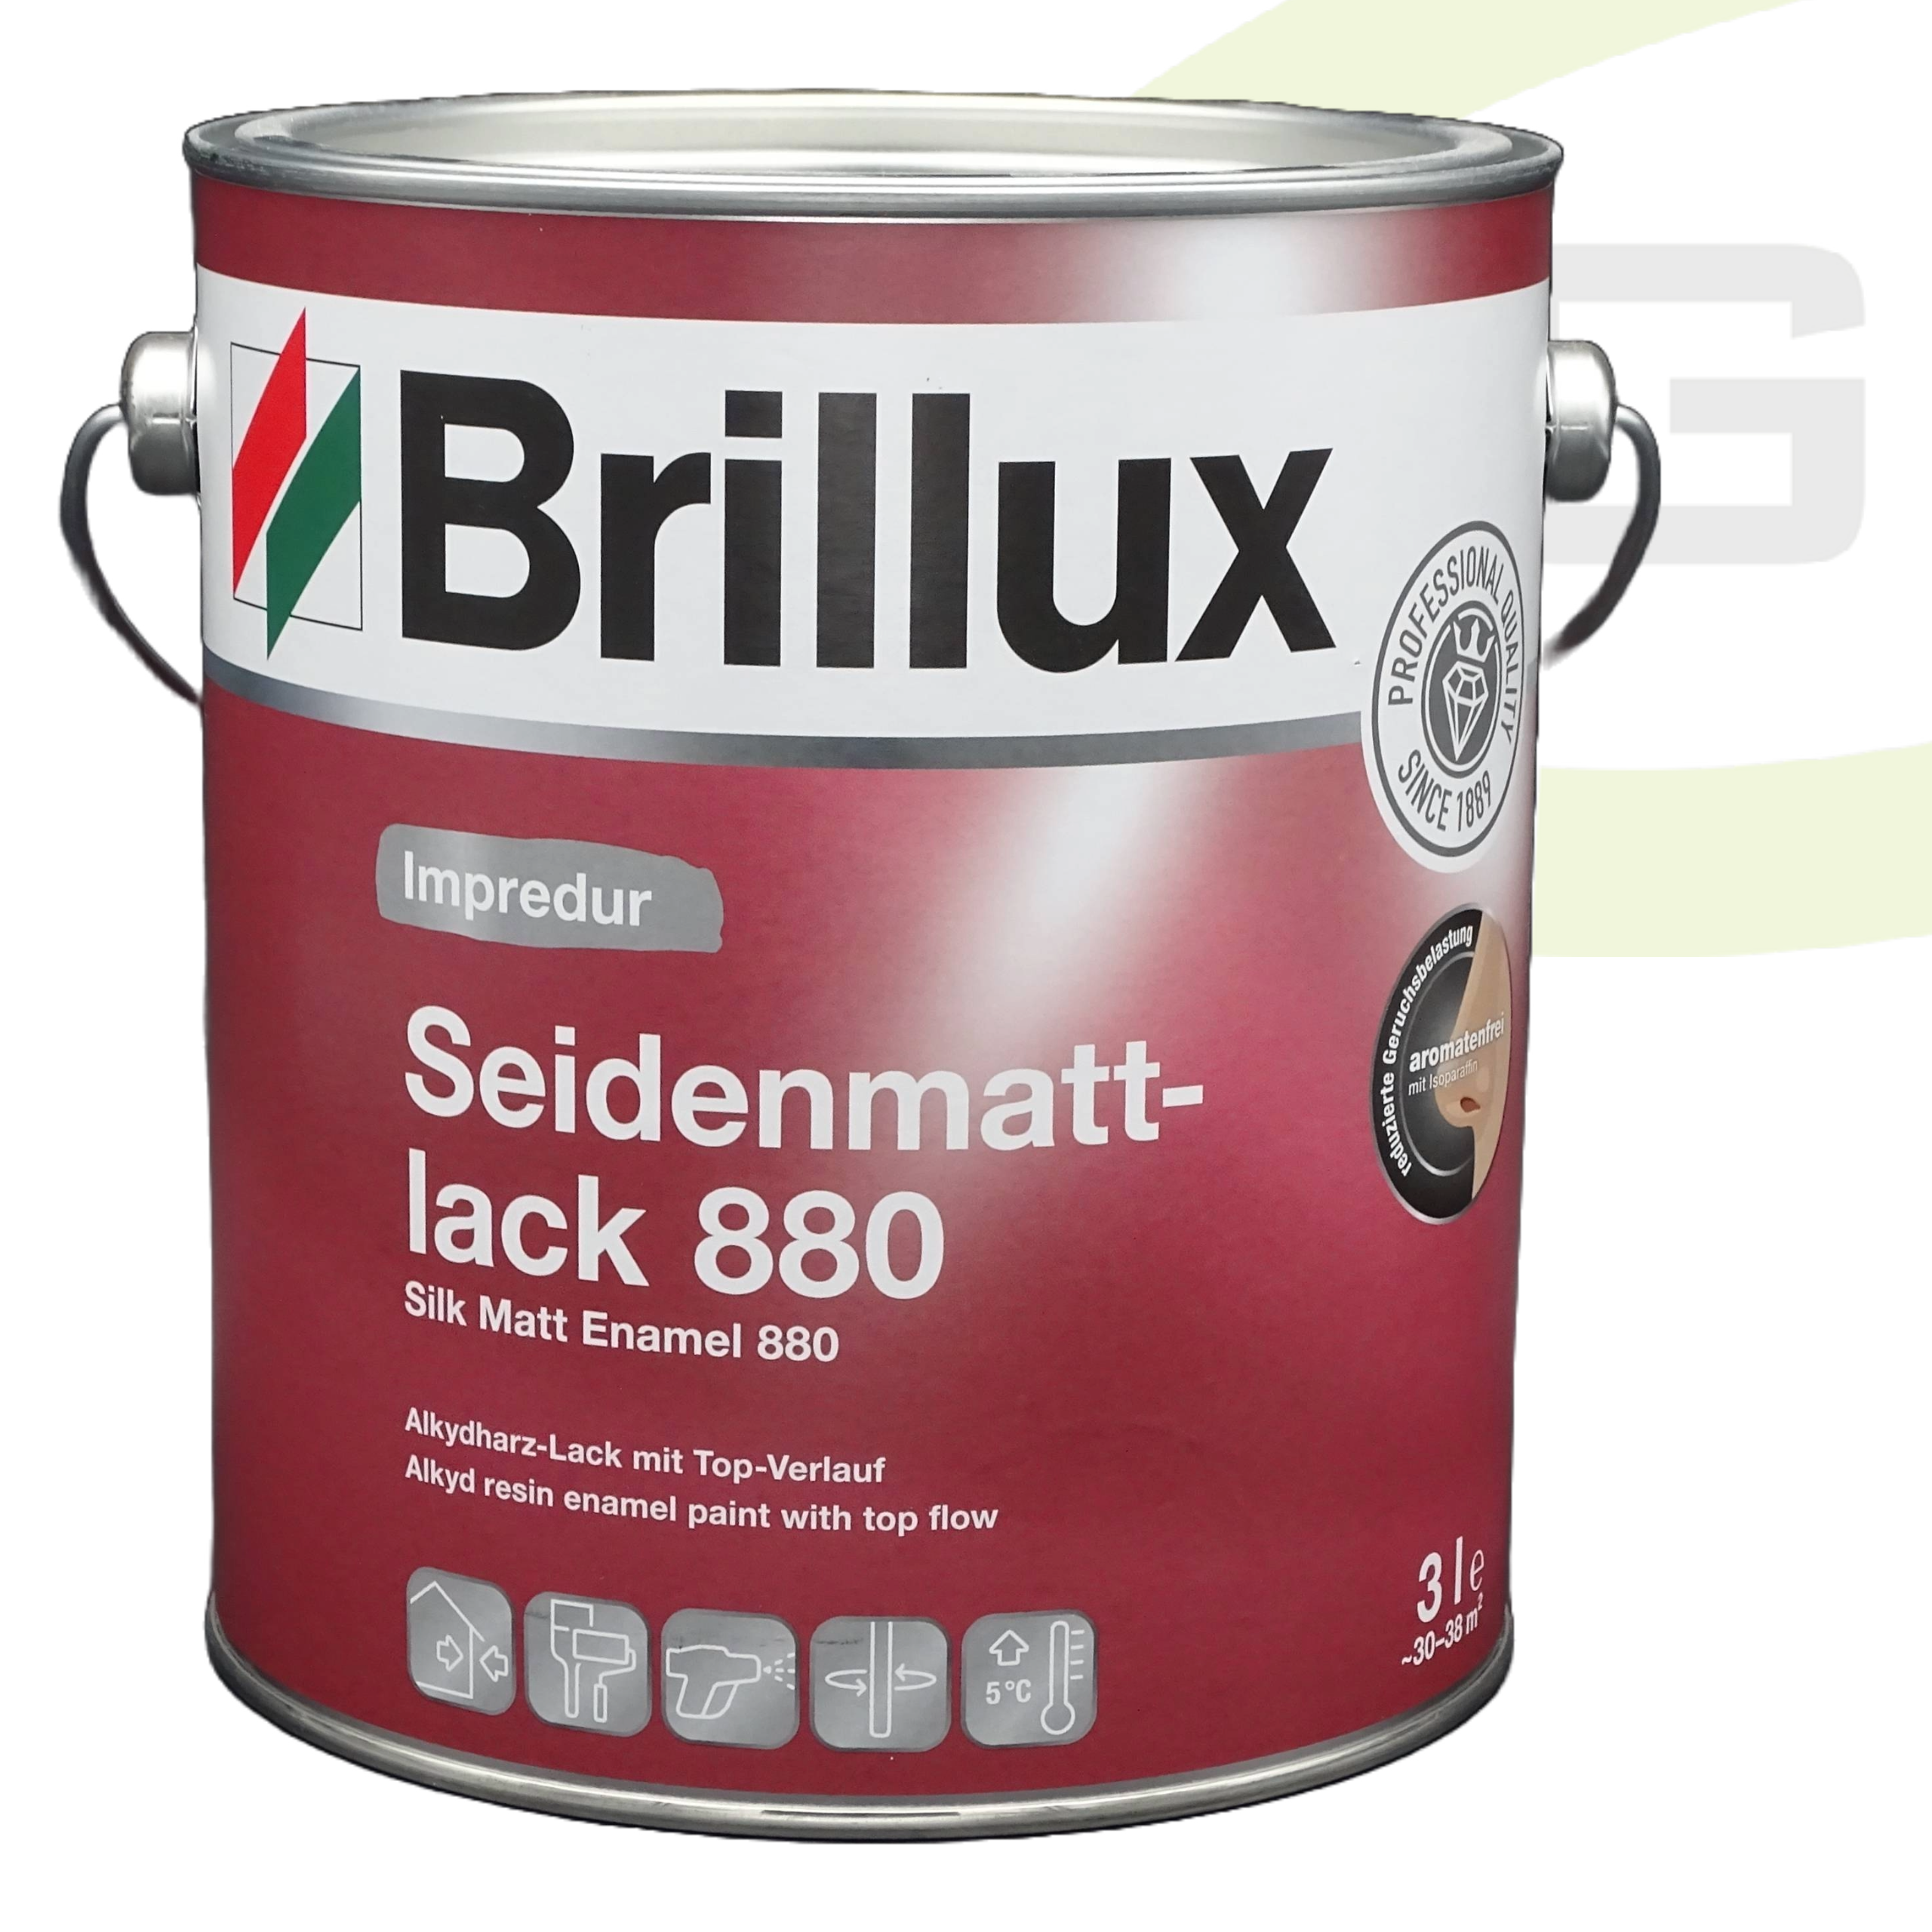 Brillux Impredur Seidenmattlack 880 - 3.00 Liter / Lösungsmittelhaltiger Endlack